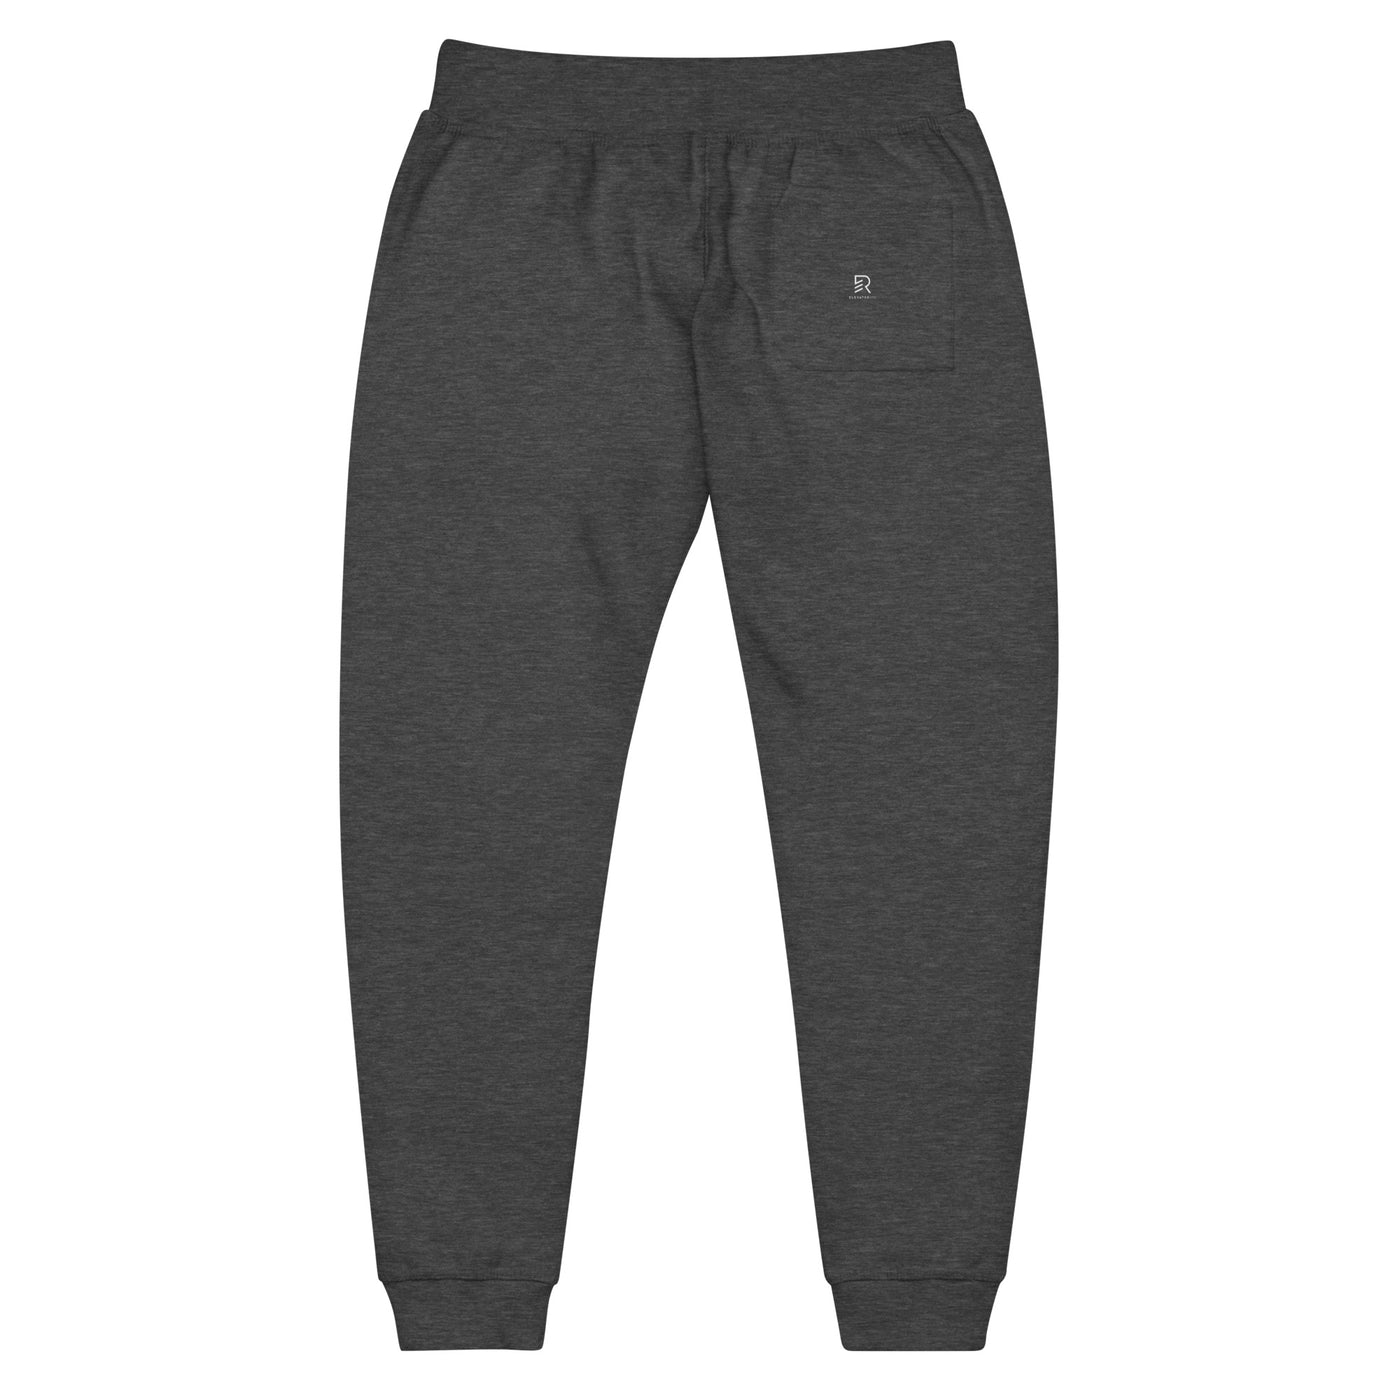 Men's Dark Gray Fleece Sweatpants - Feed Your Focus